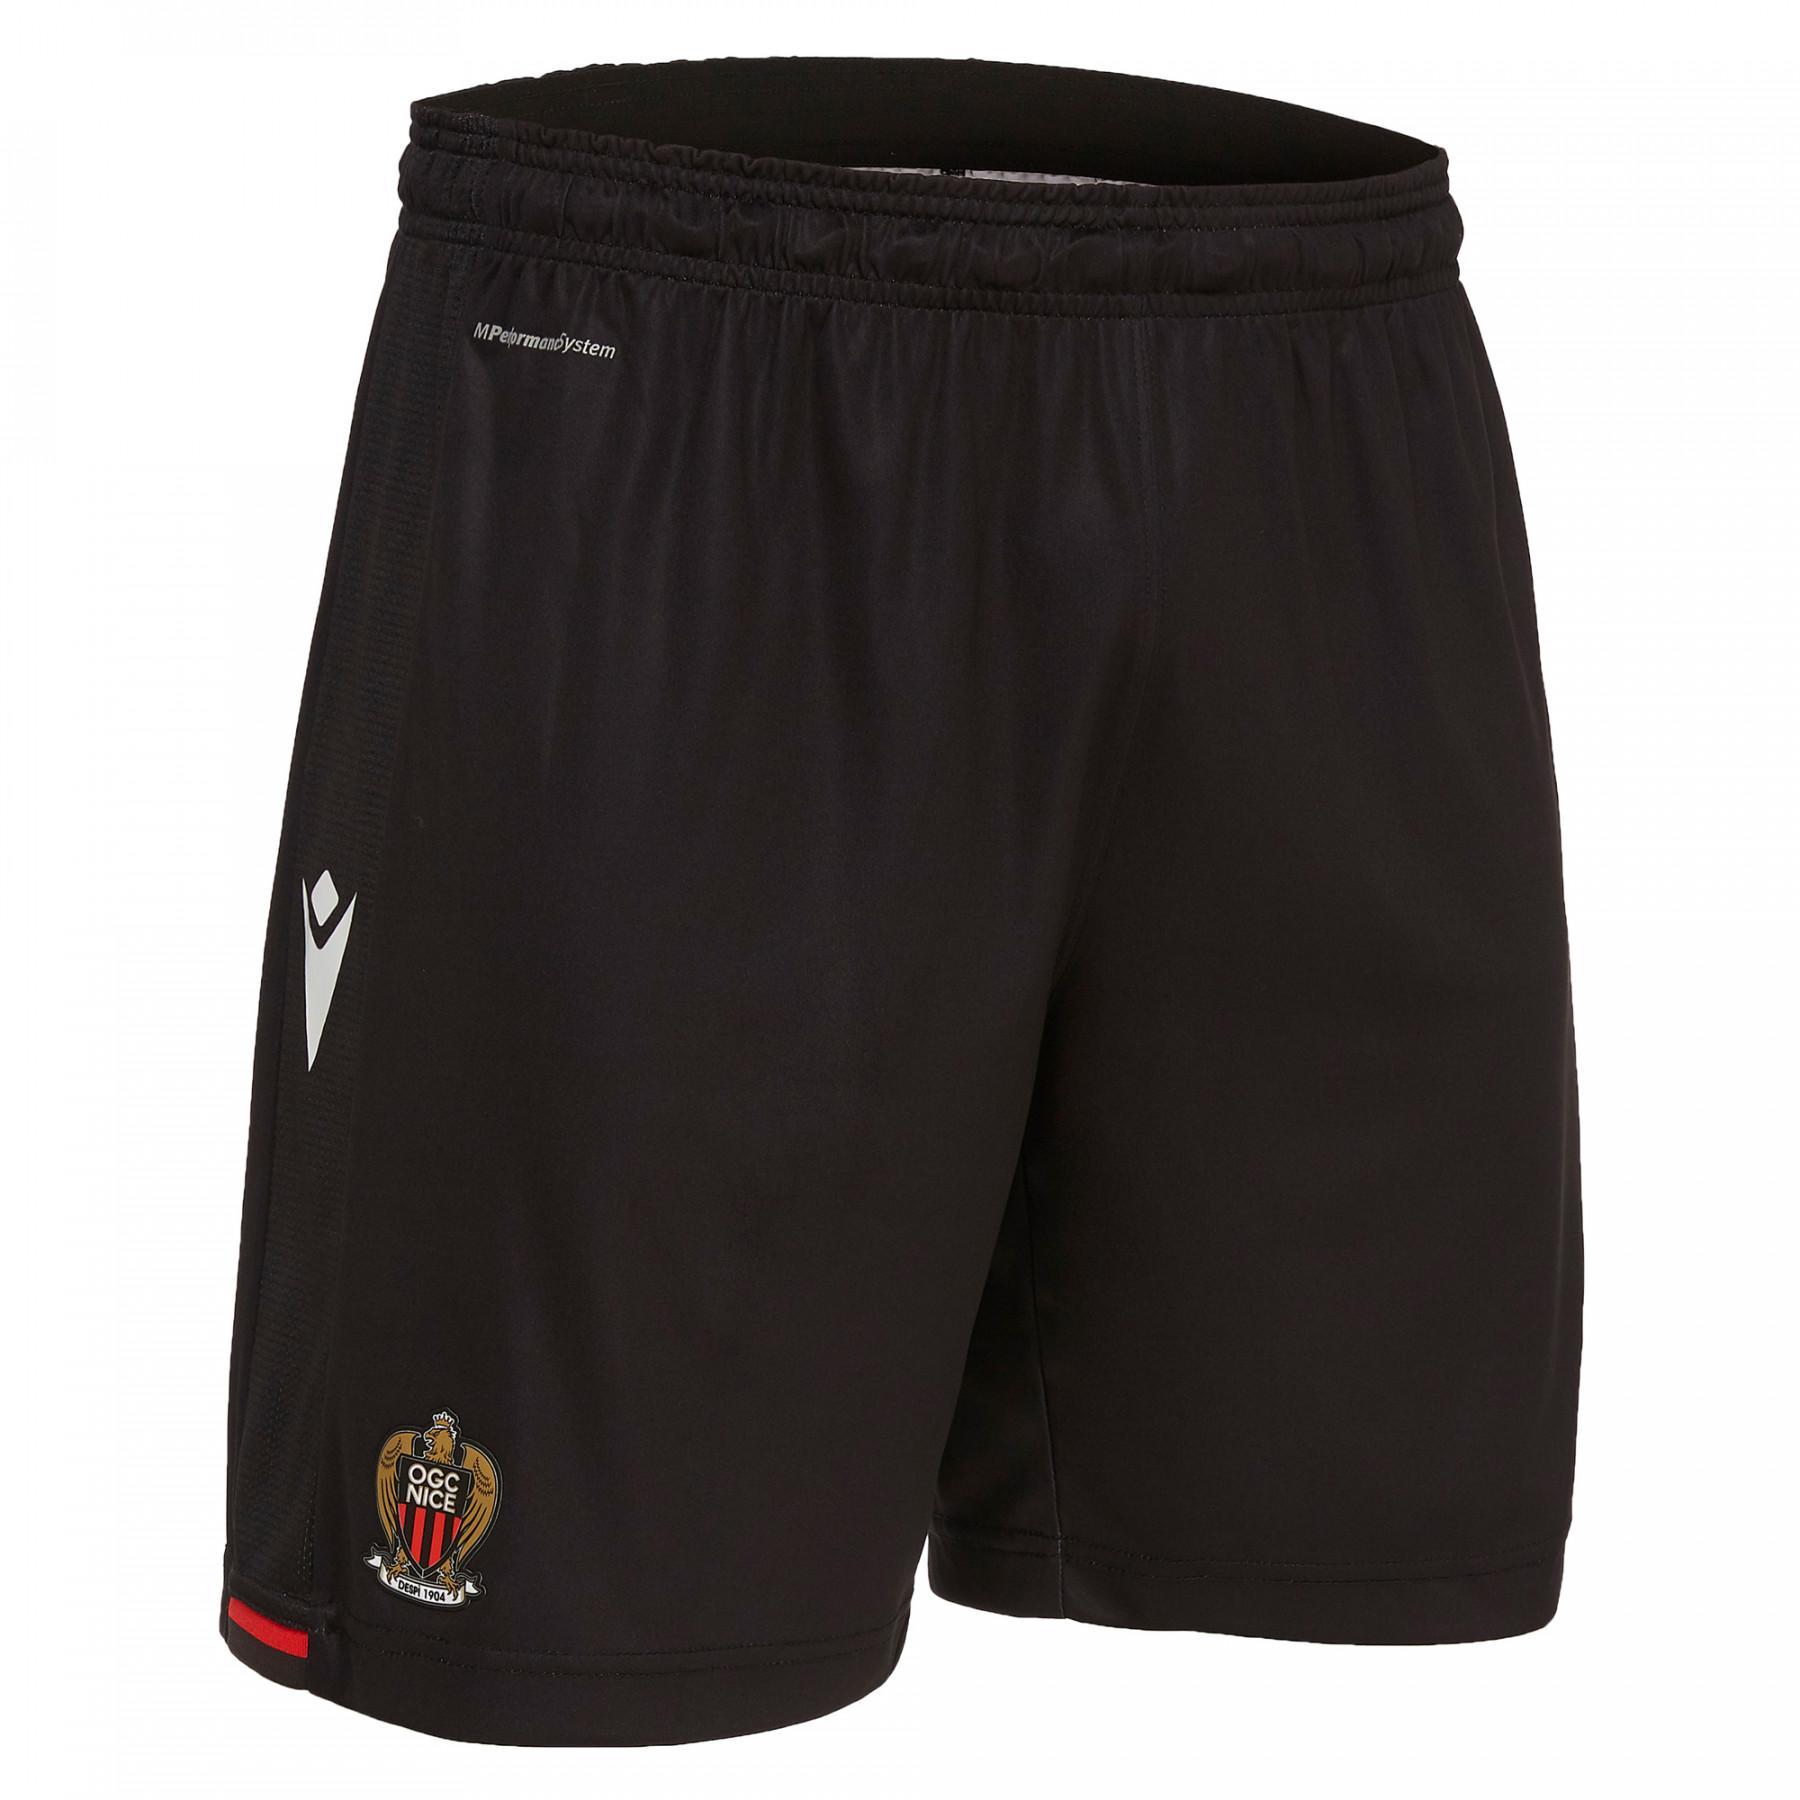 Pantalones cortos para el hogar OGC Nice 19/20